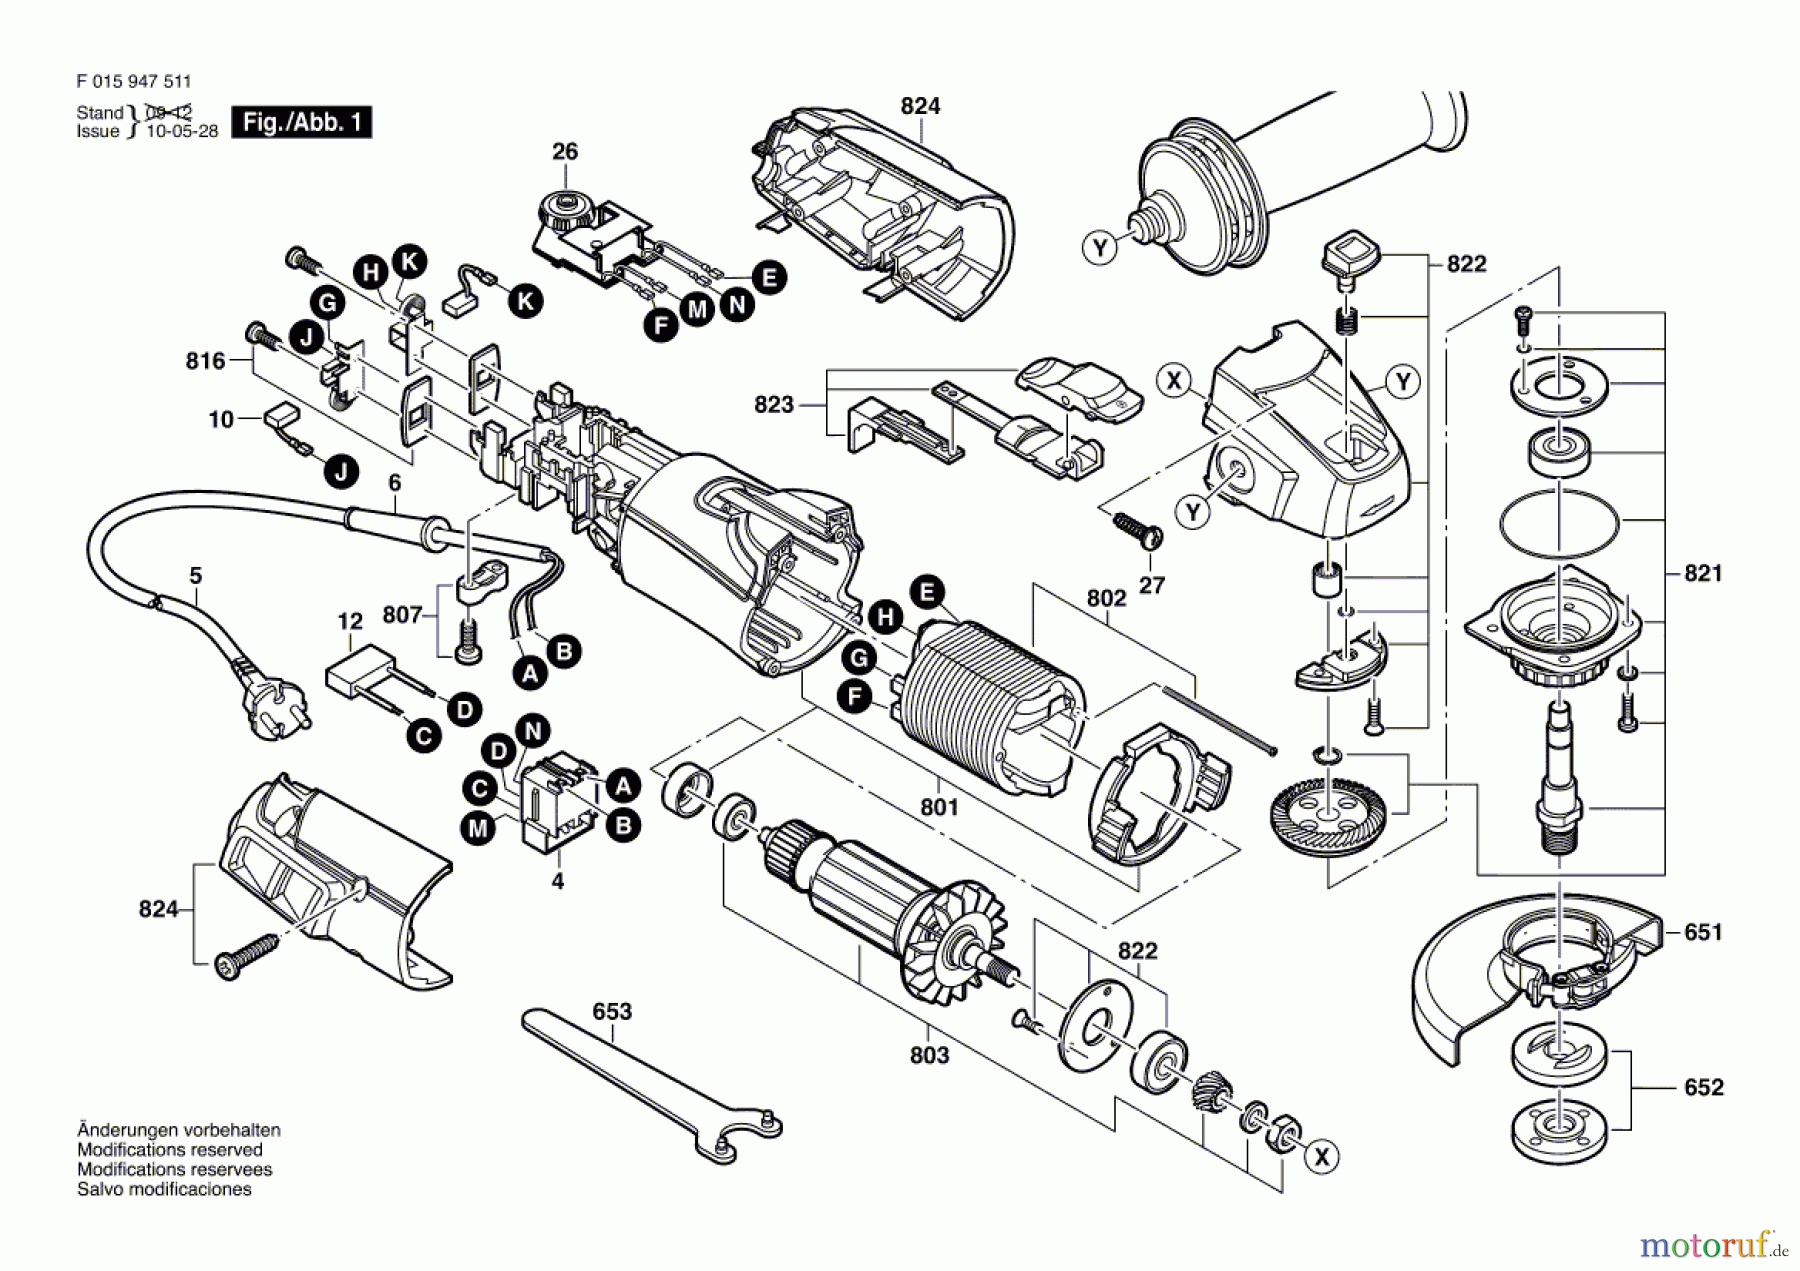  Bosch Werkzeug Winkelschleifer 9475 Seite 1